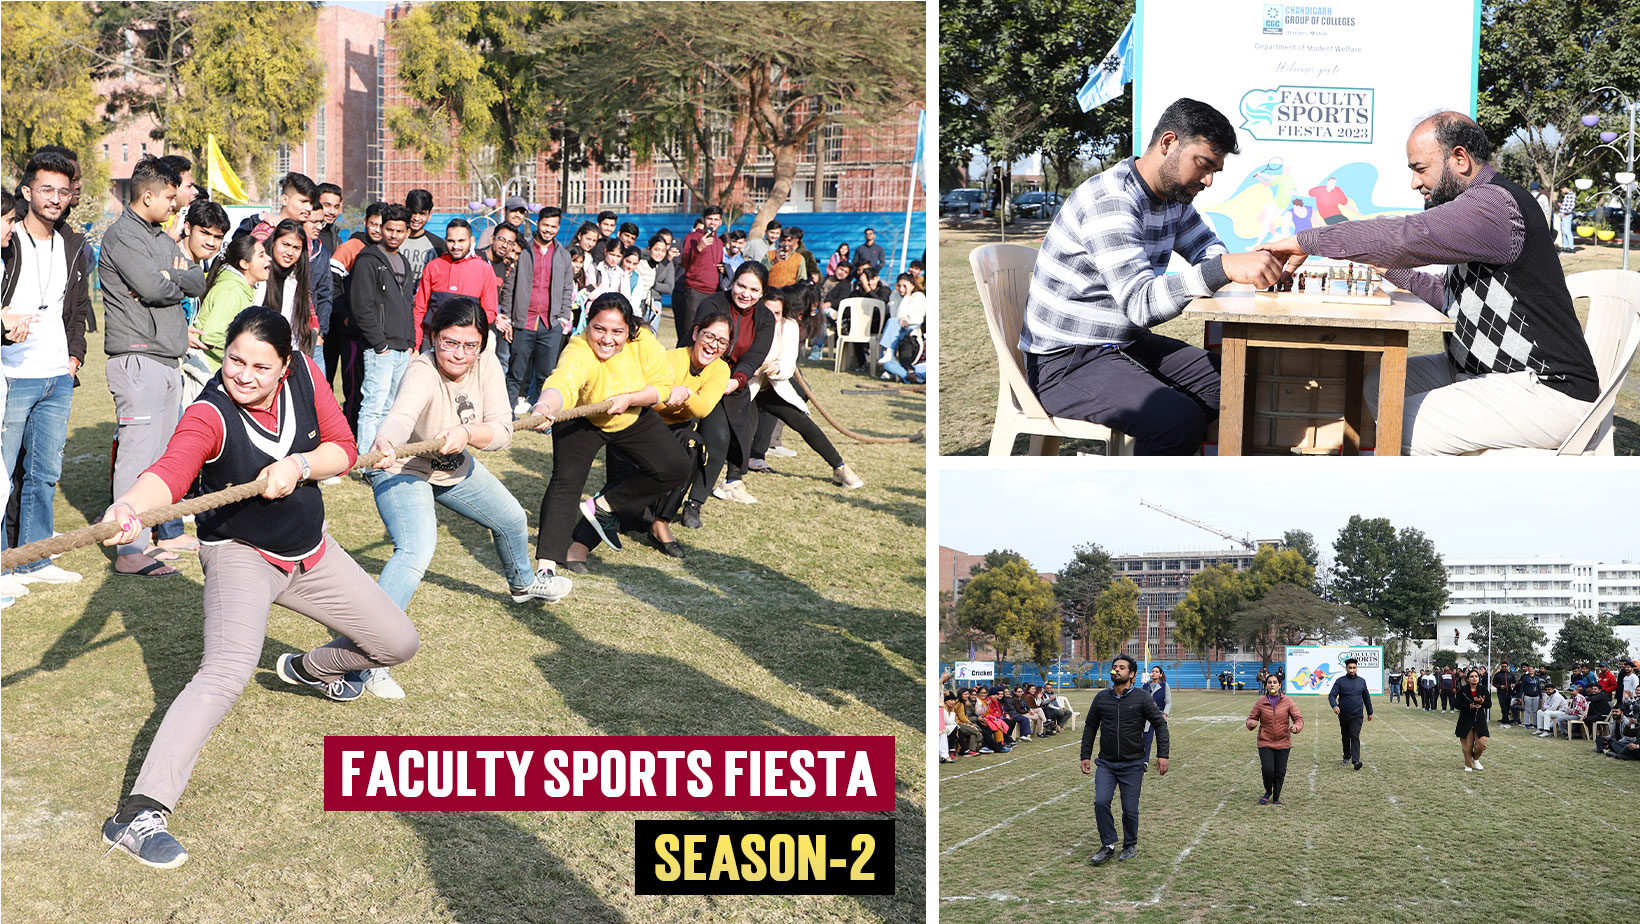 Faculty Sports Fiesta